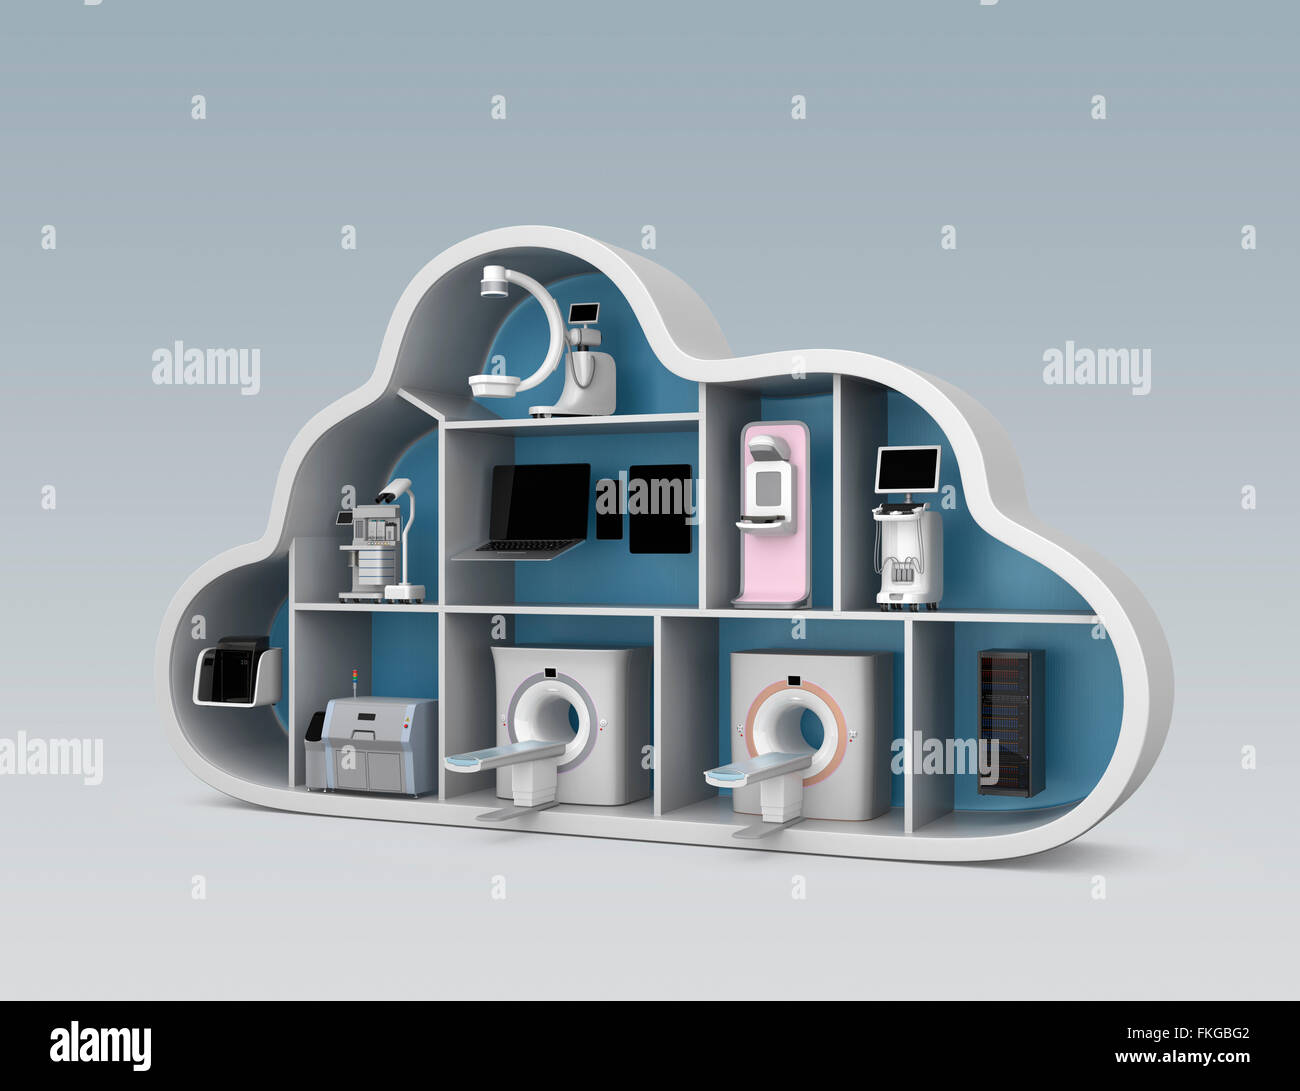 Medical imaging-System und PACS Server, 3D-Drucker im Cloud-Form-Container. Konzept für medizinische Cloud-Dienst. Stockfoto